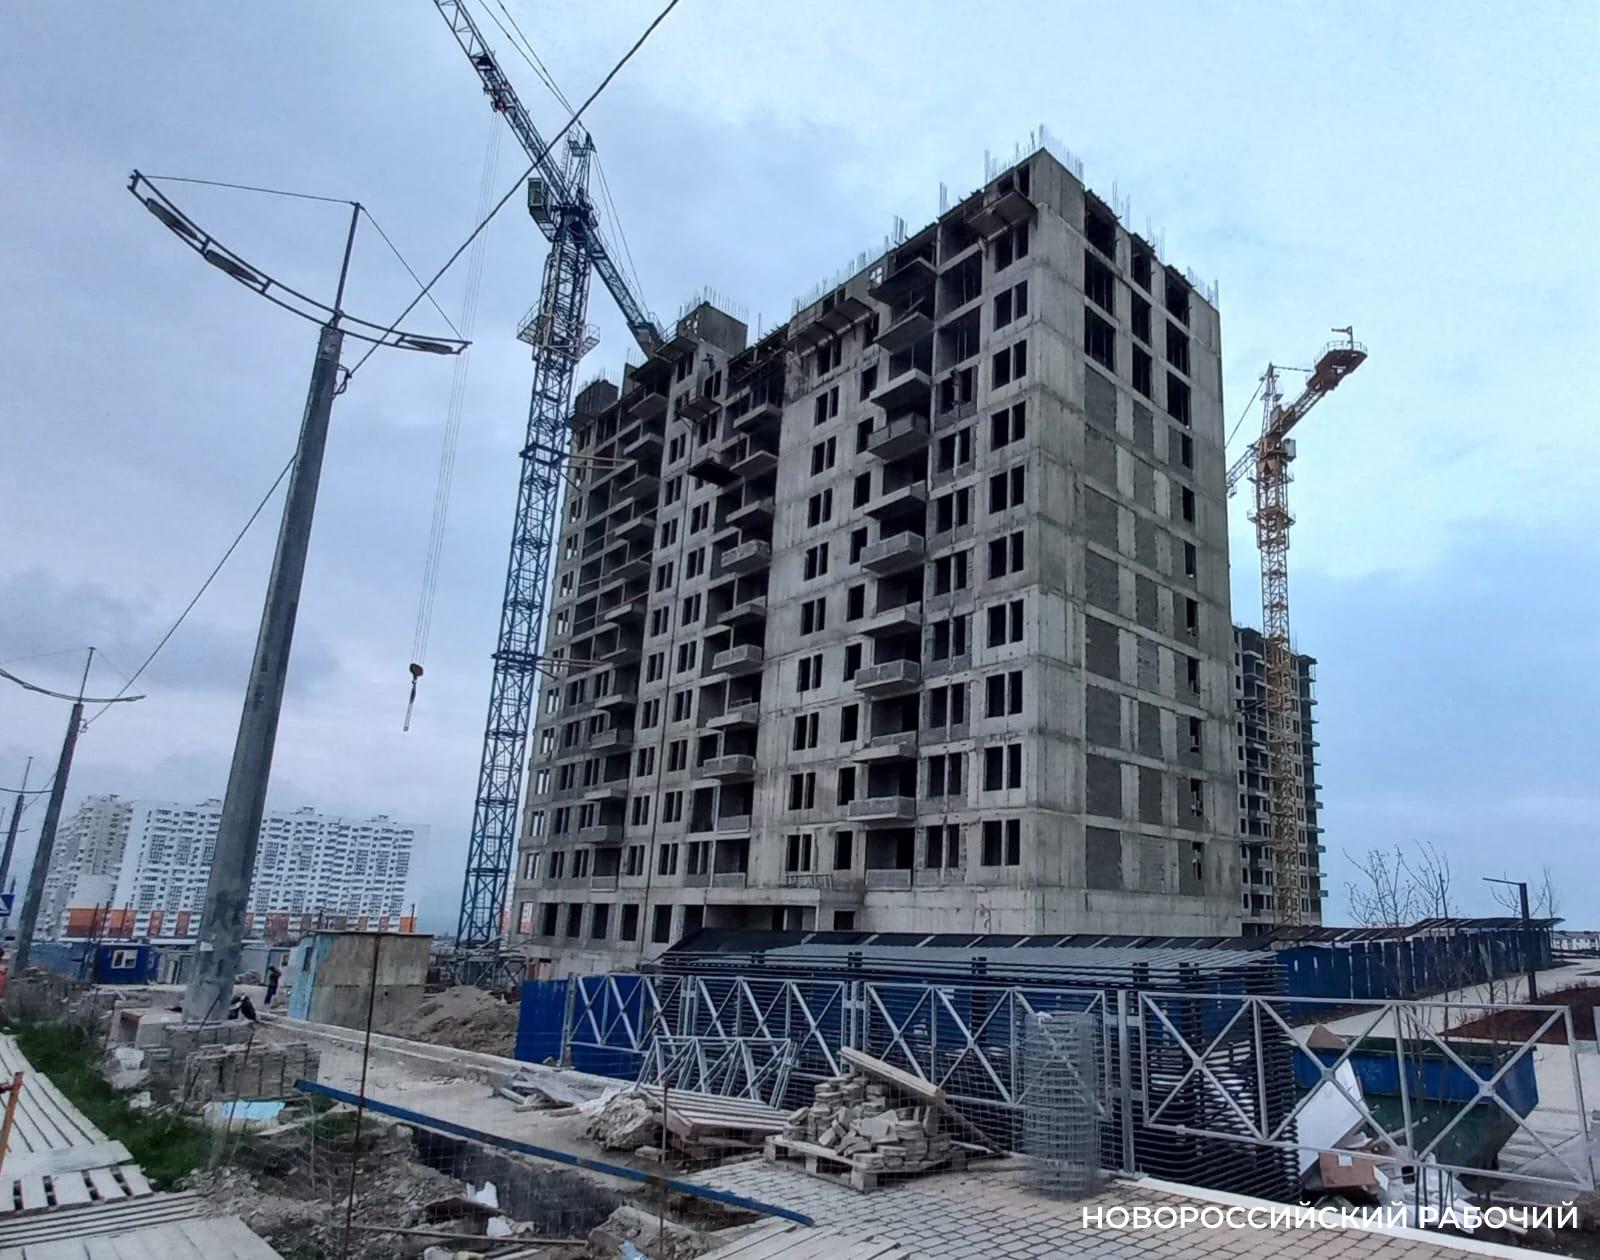 В Новороссийске половину жилья строят частники